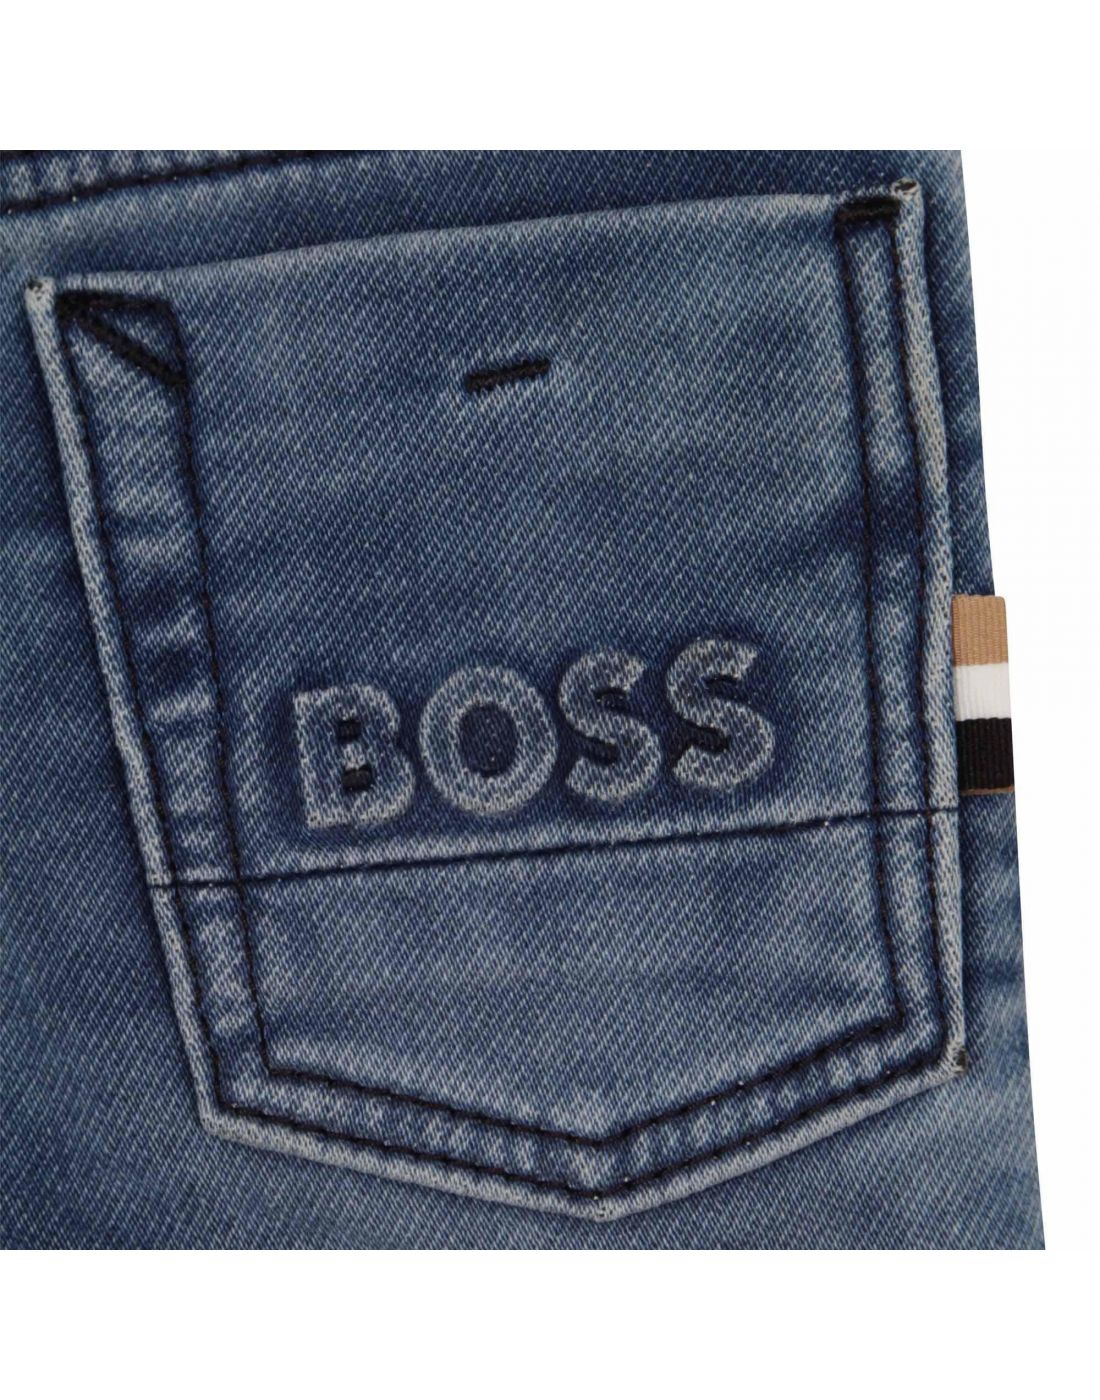 Hugo Boss Boys Jean Trouser